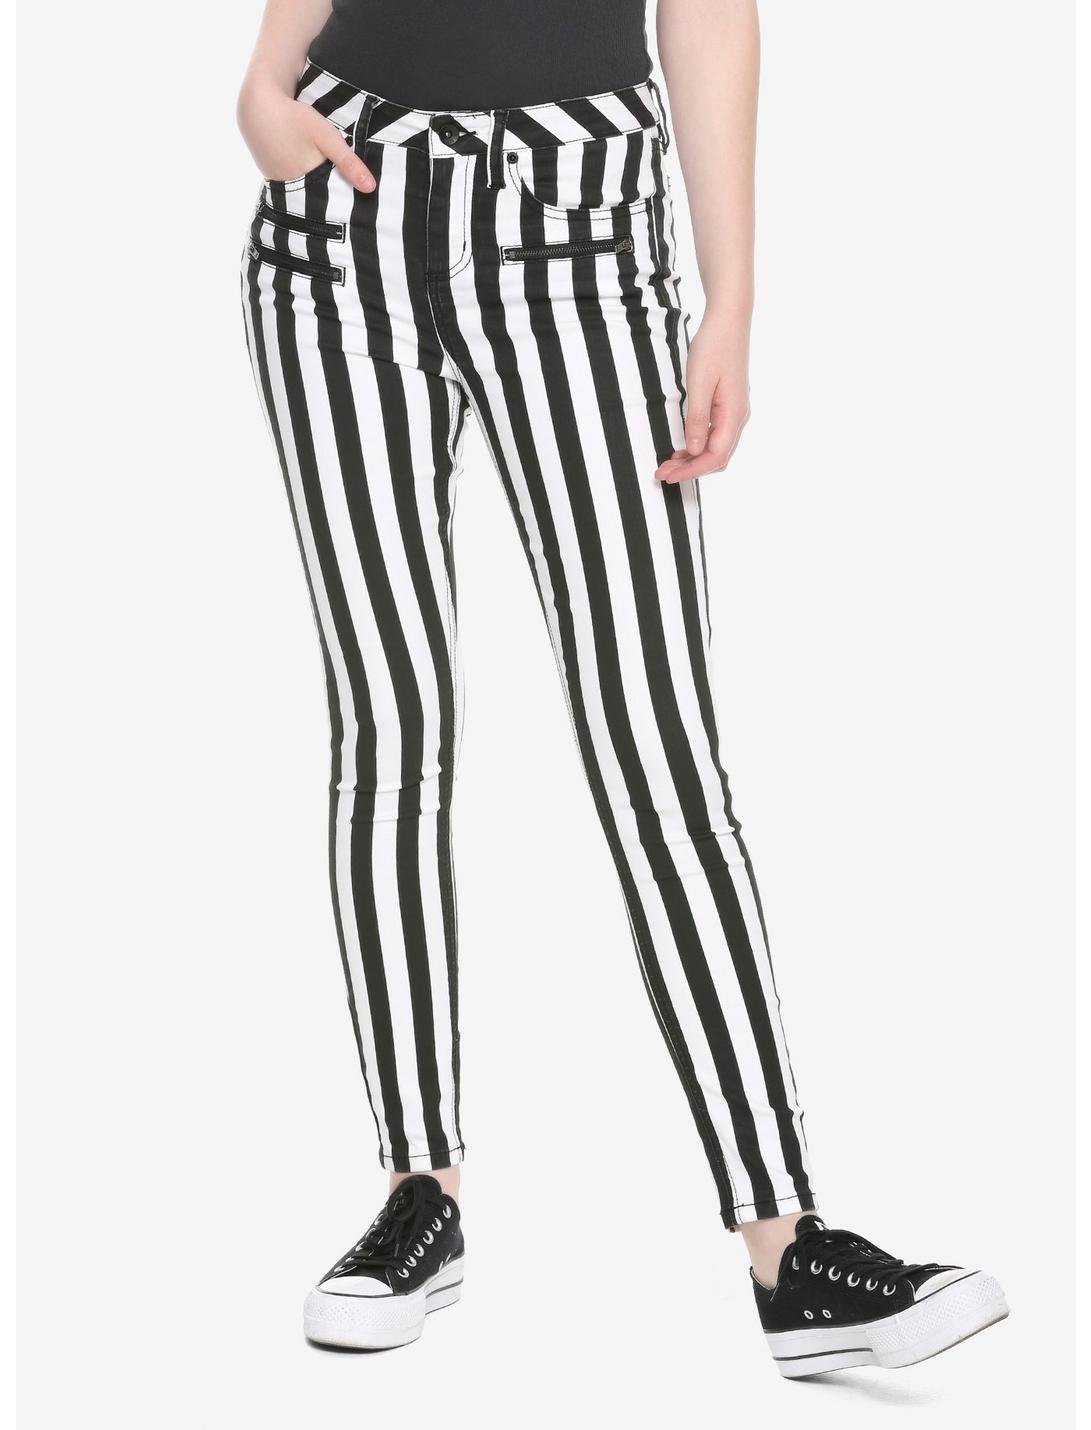 HT Denim Black & White Stripe Hi-Rise Super Skinny Jeans, BLACK-WHITE STRIPE, hi-res